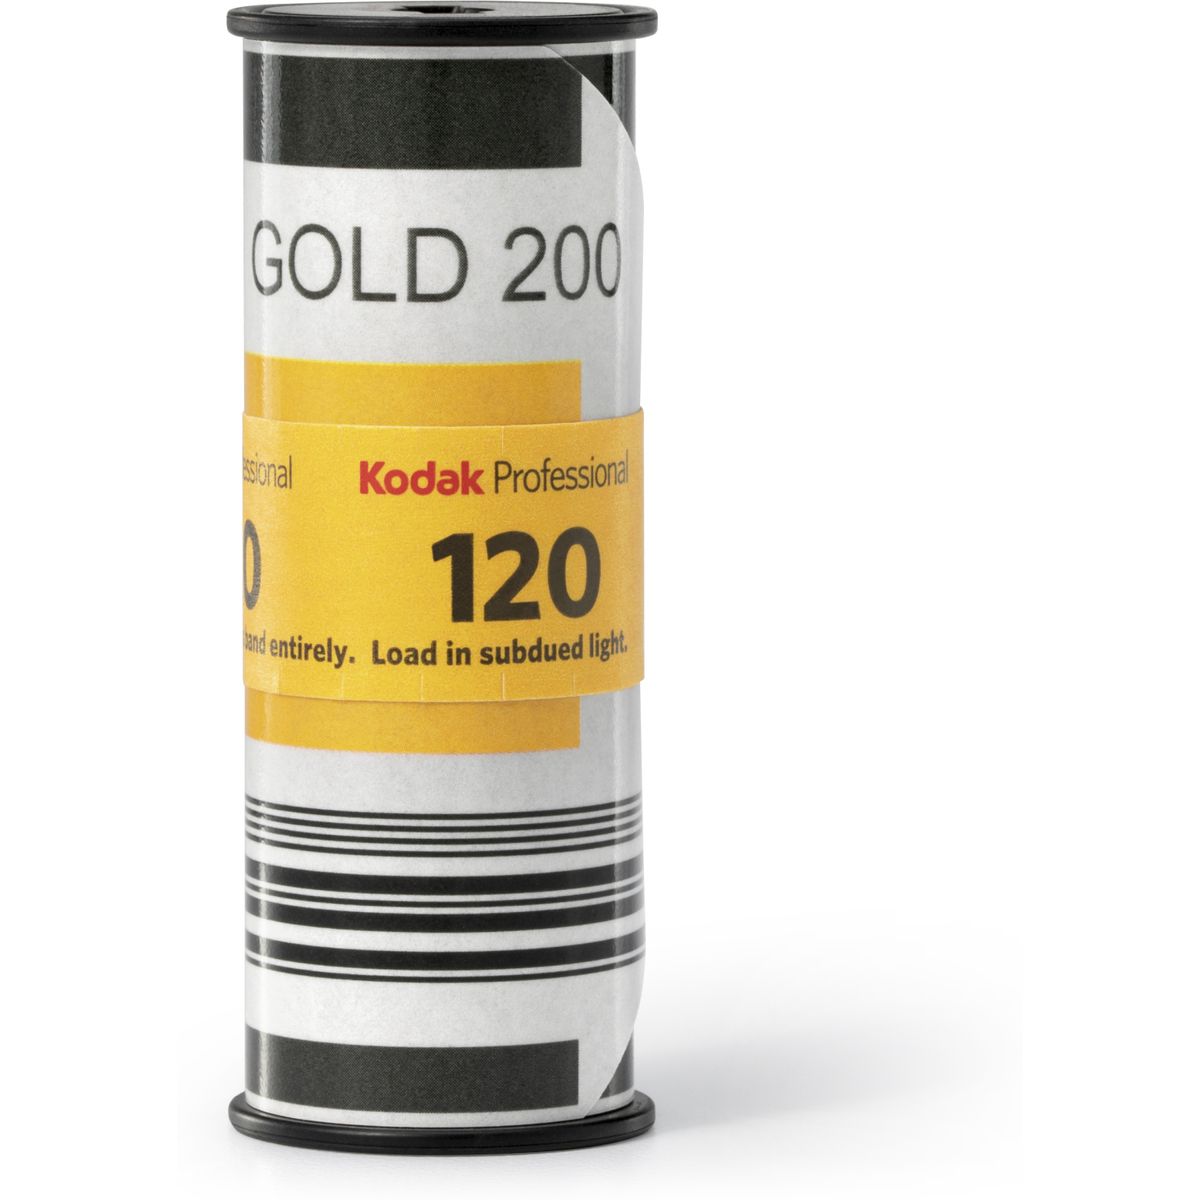 Kodak Professional Gold 200 120 5 Pak